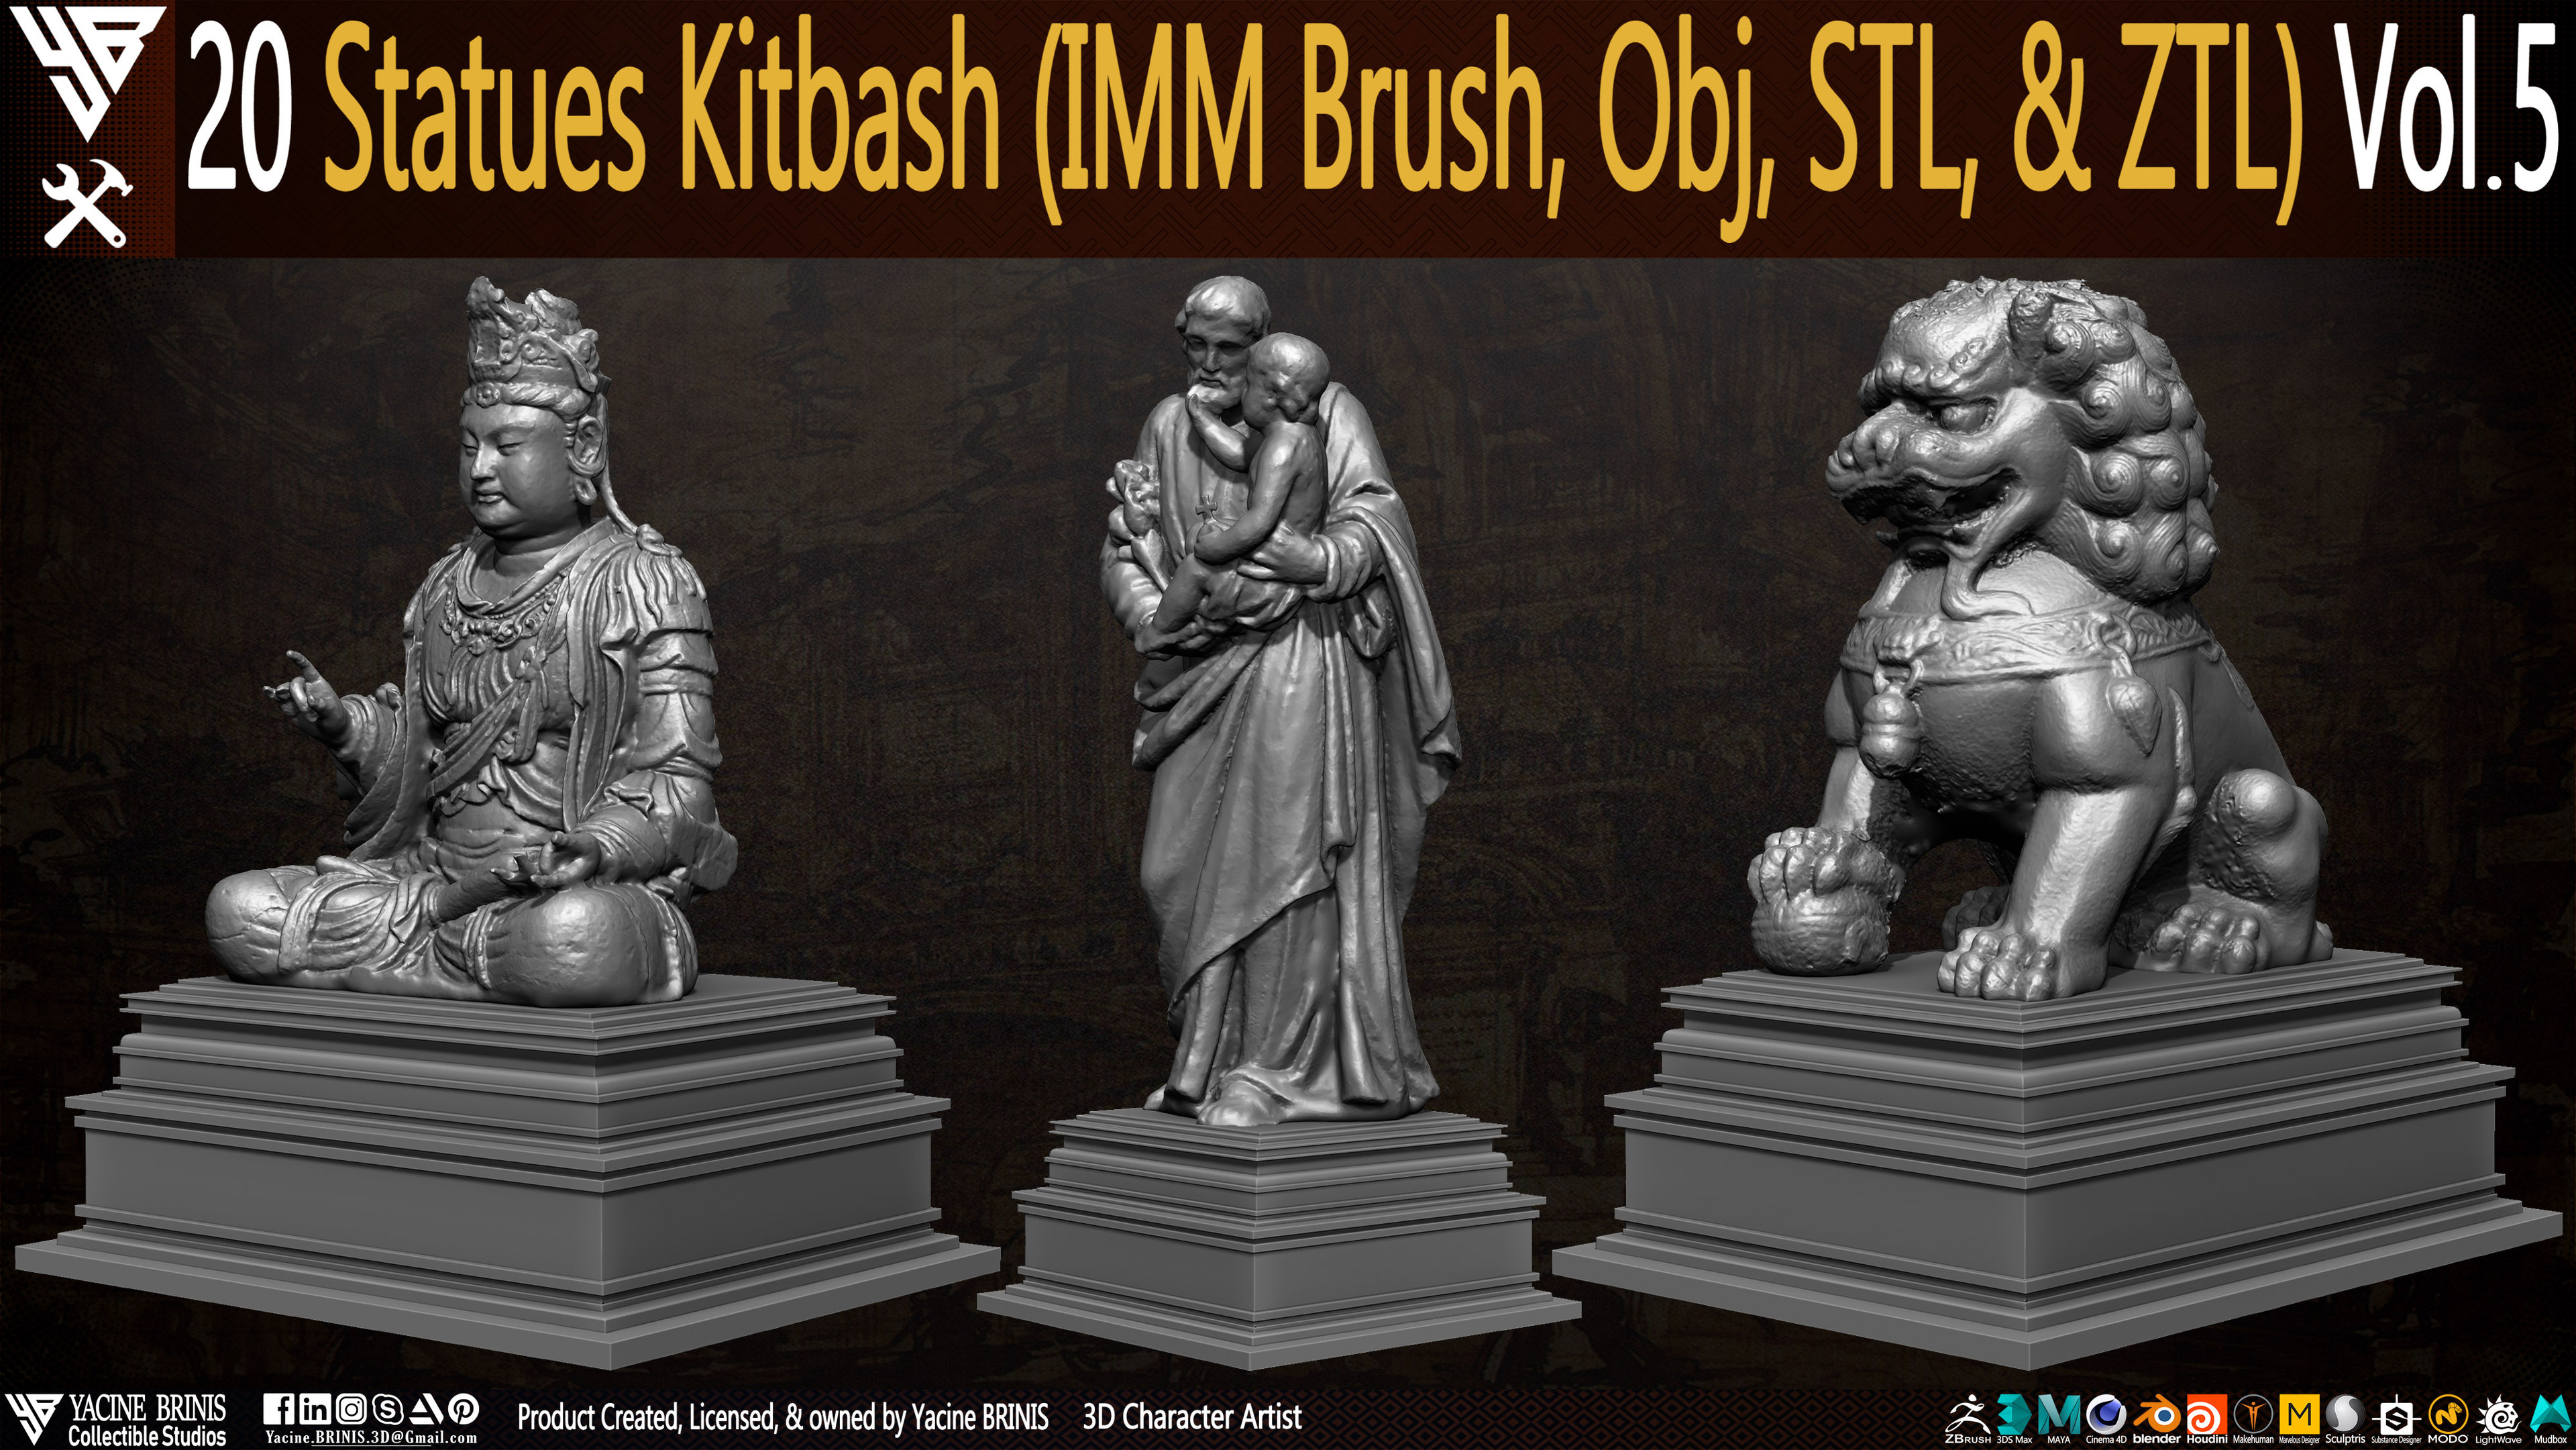 Statues Kitbash by yacine brinis Set 25